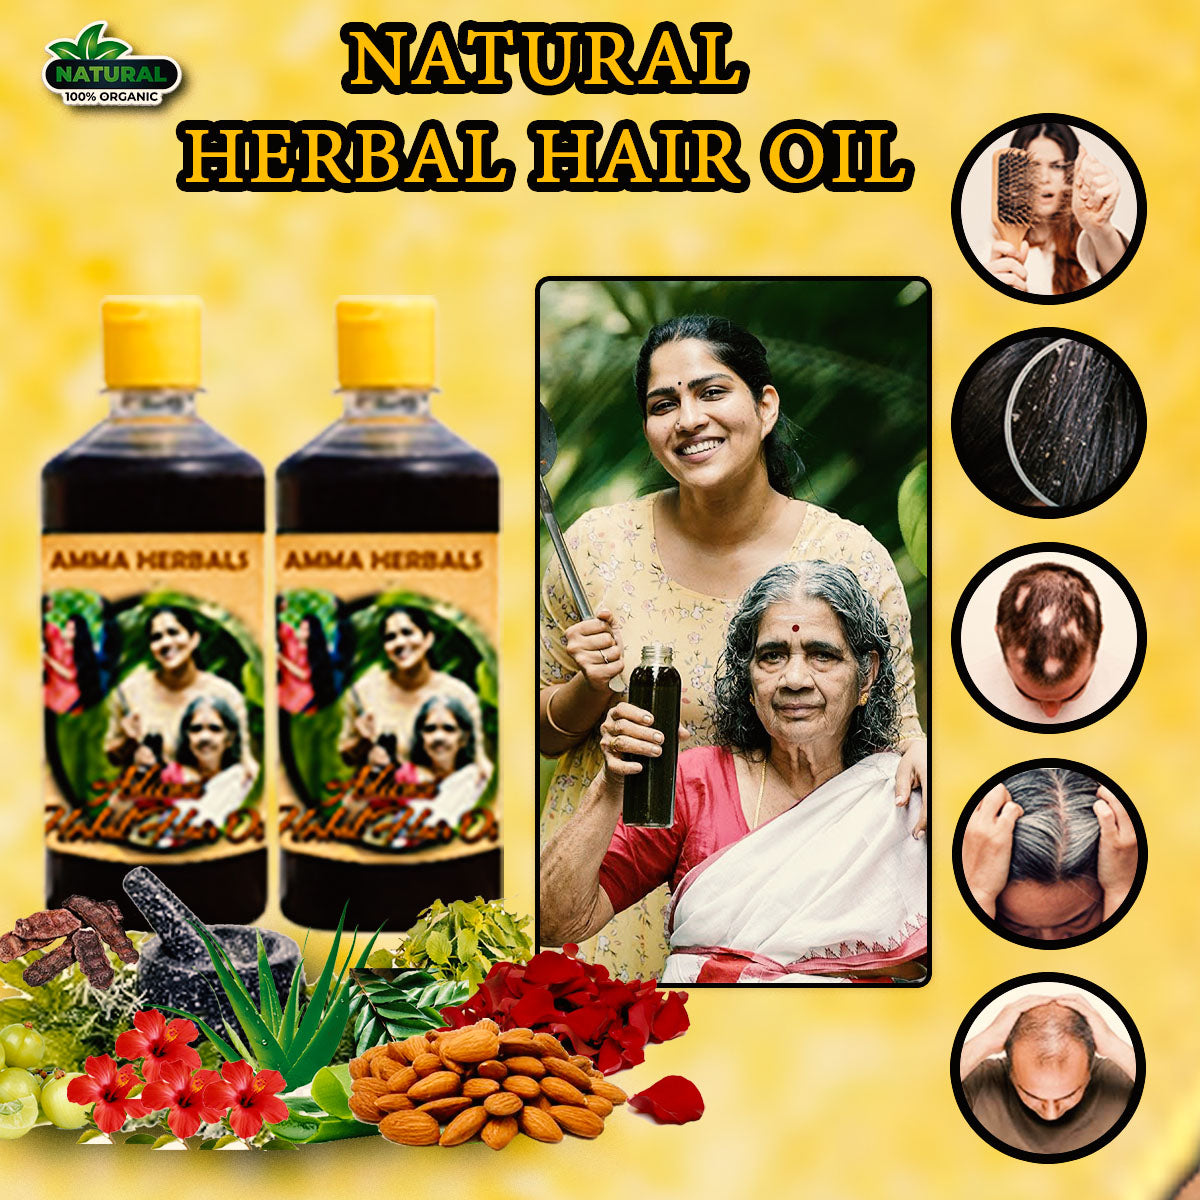 Adivasi Herbal Hair Oil